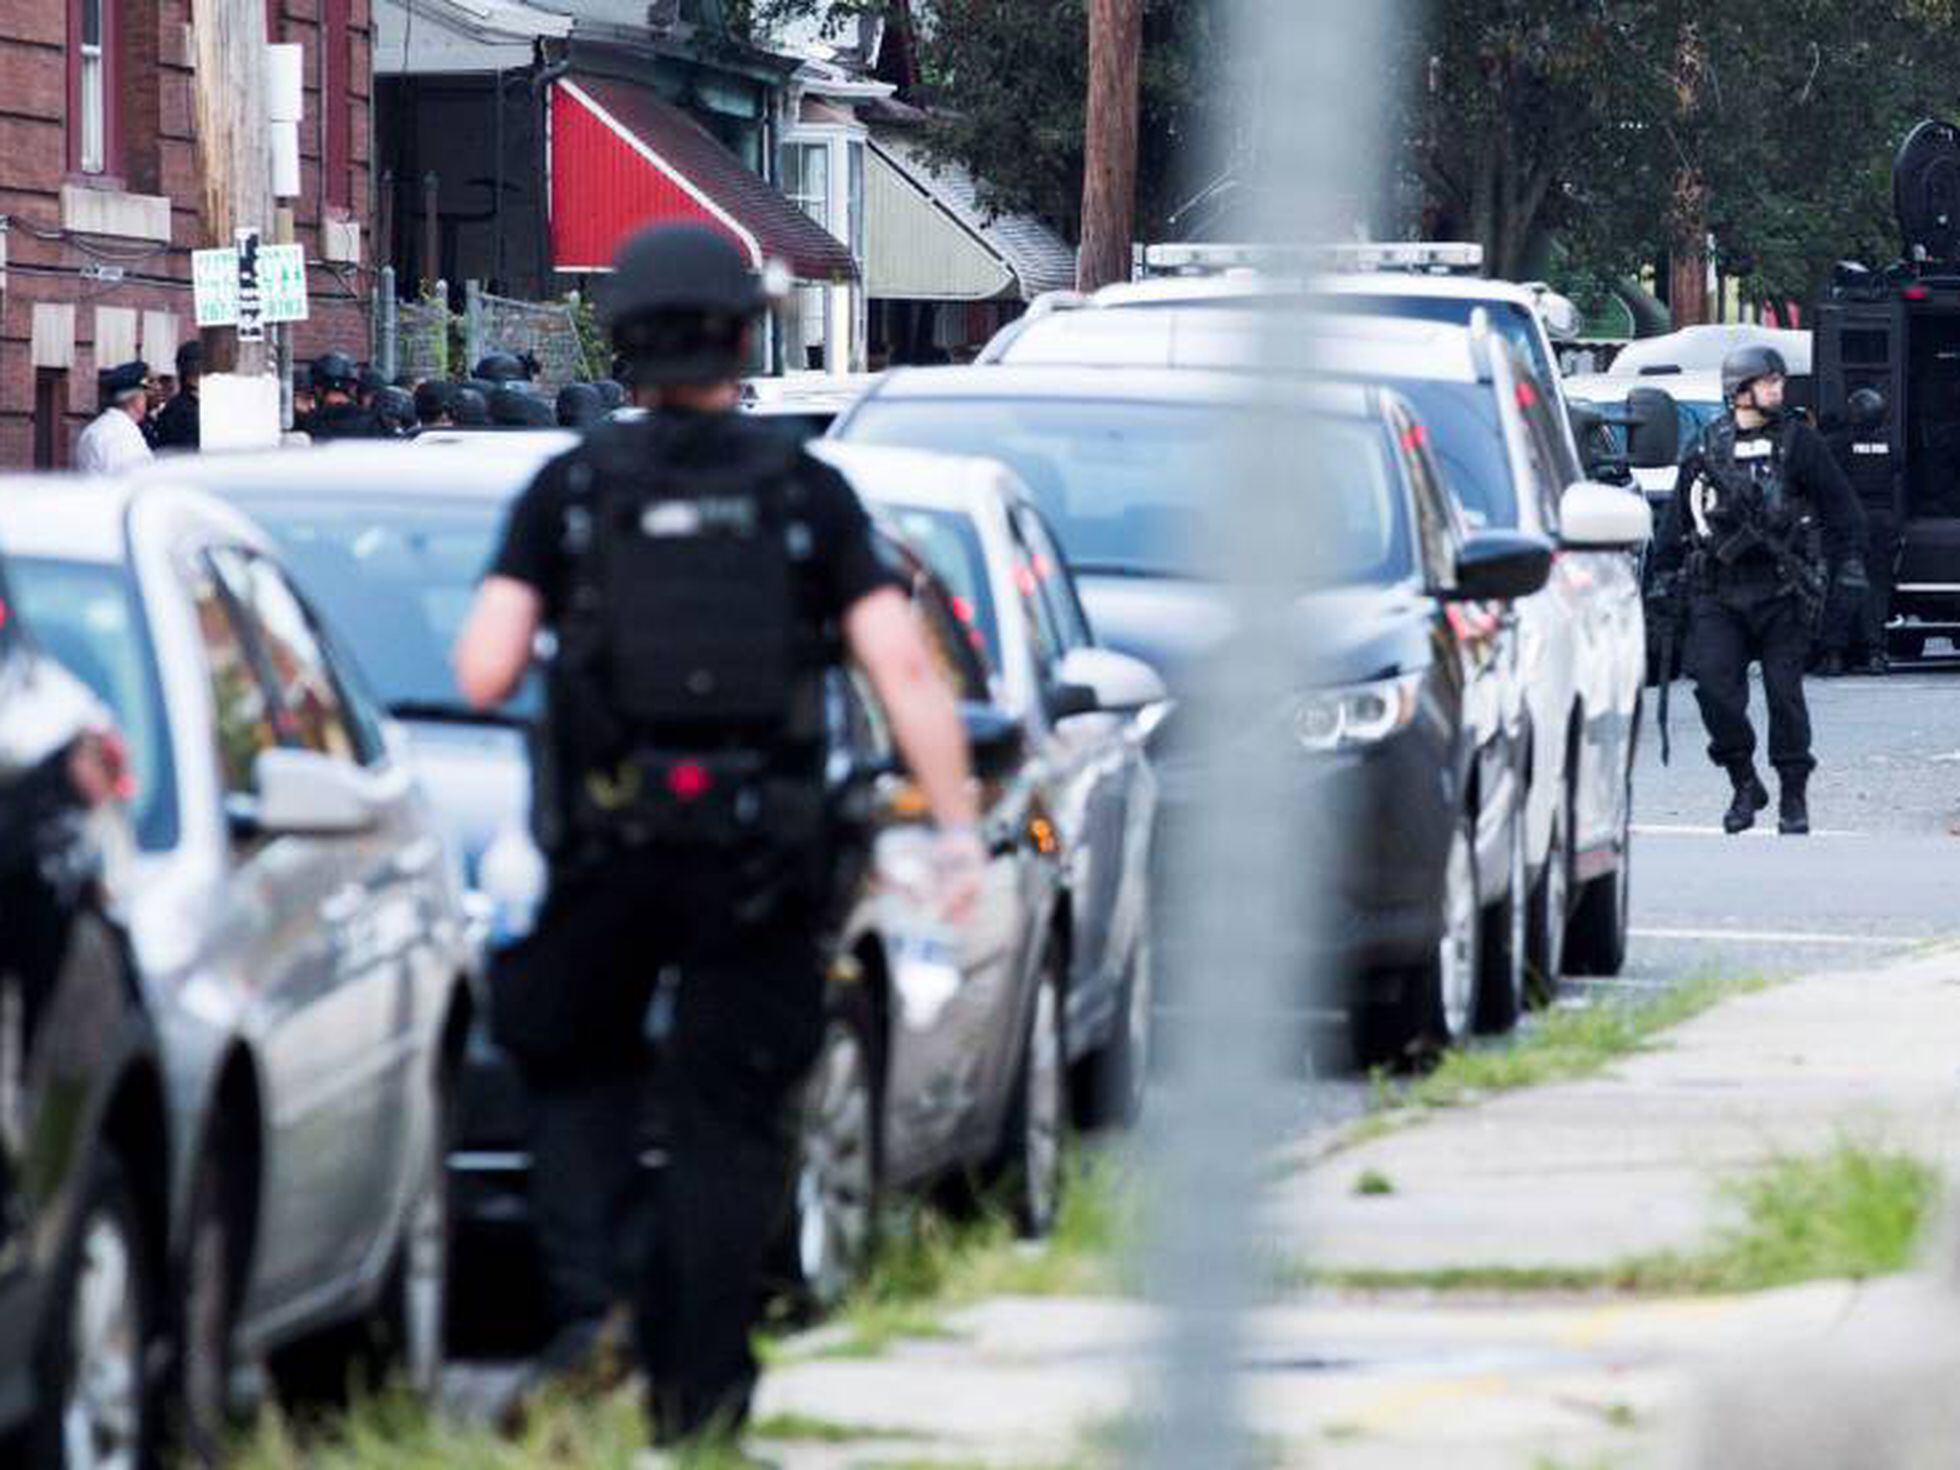 Al menos seis policías heridos en un tiroteo en Filadelfia | Internacional  | EL PAÍS